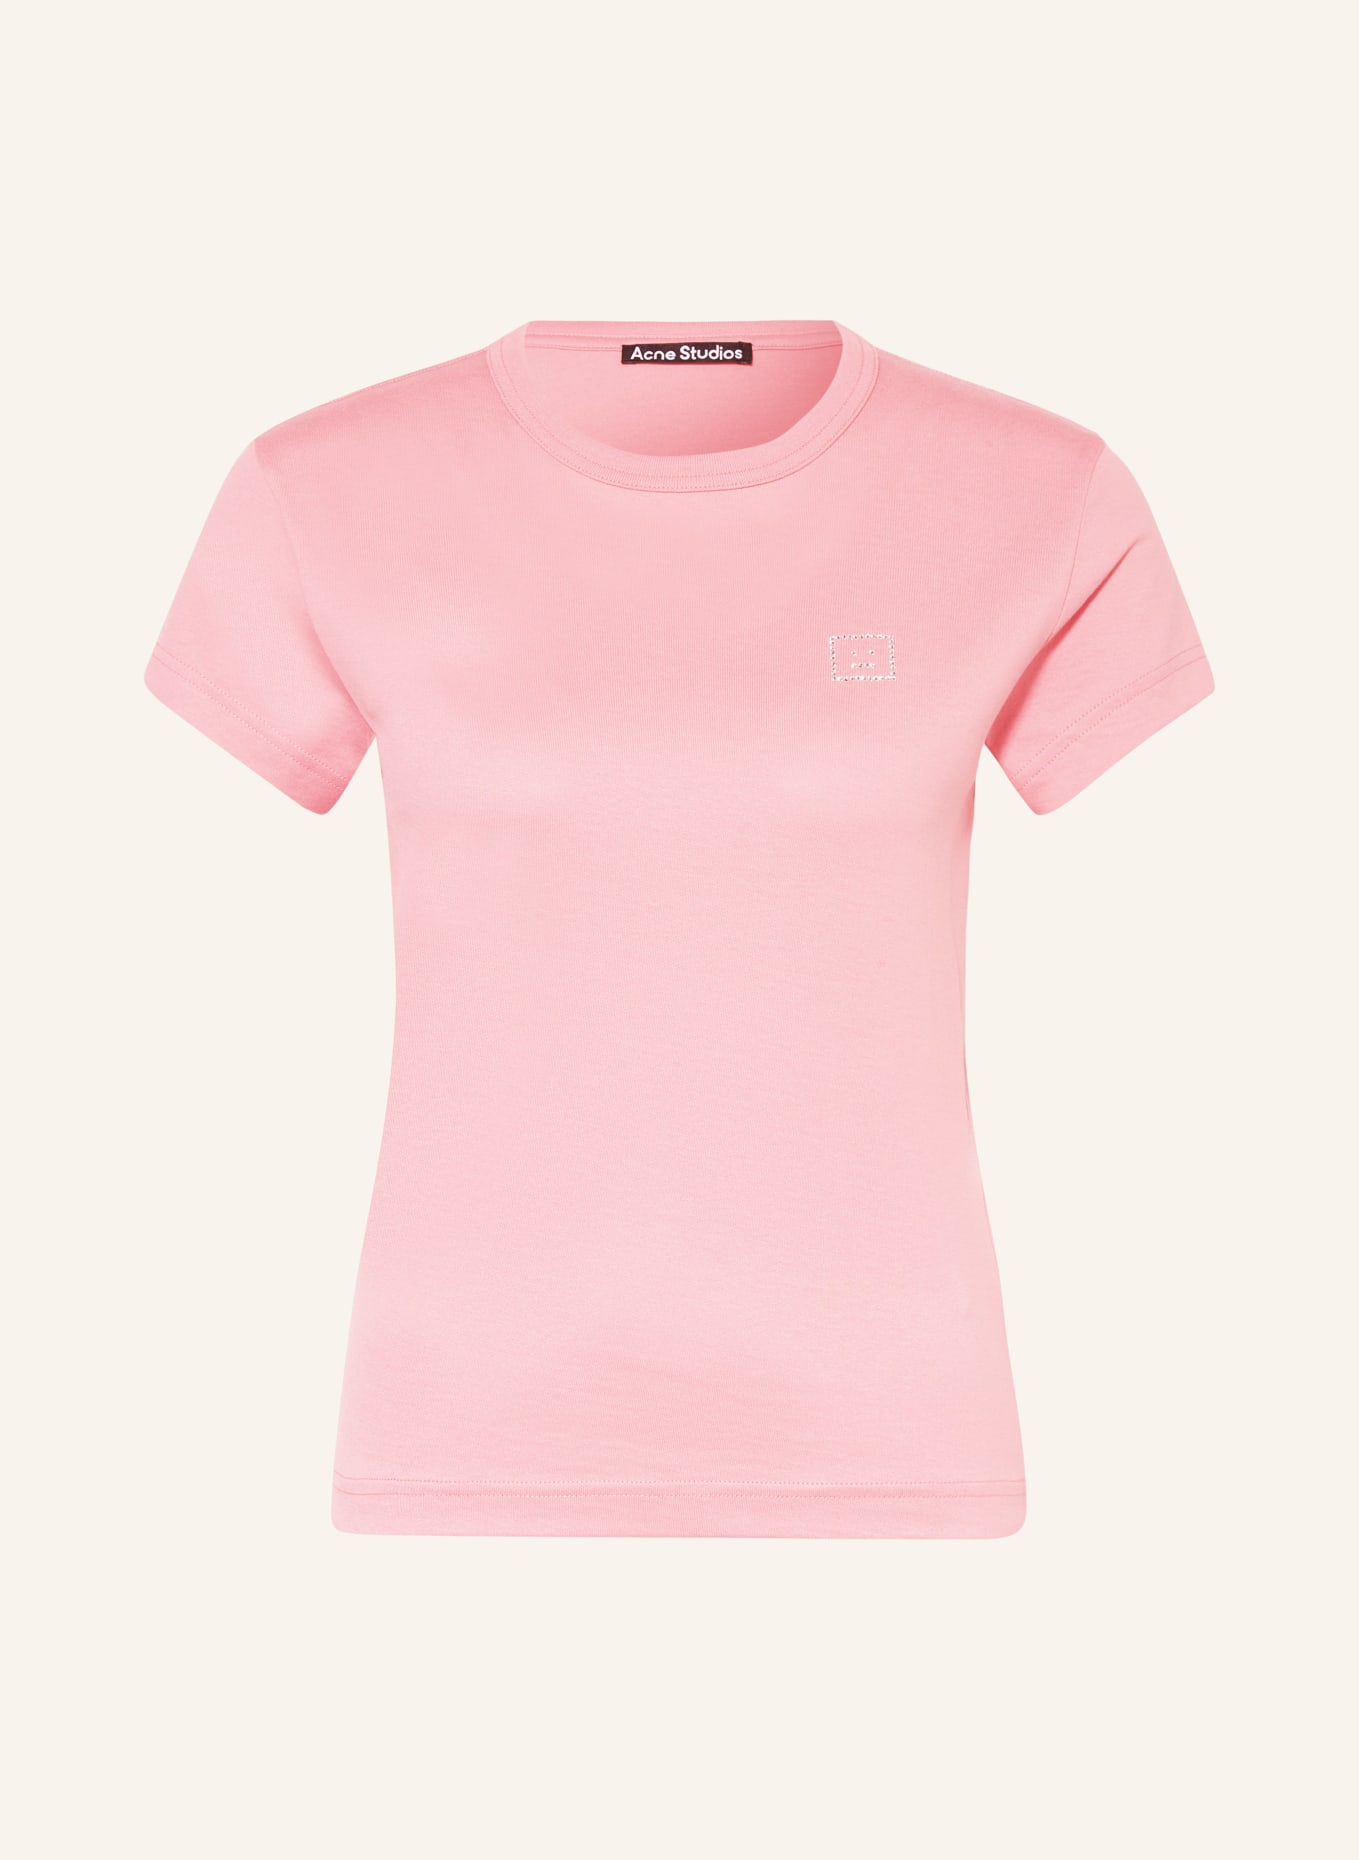 Acne Studios T-Shirt mit Schmucksteinen, Farbe: PINK (Bild 1)